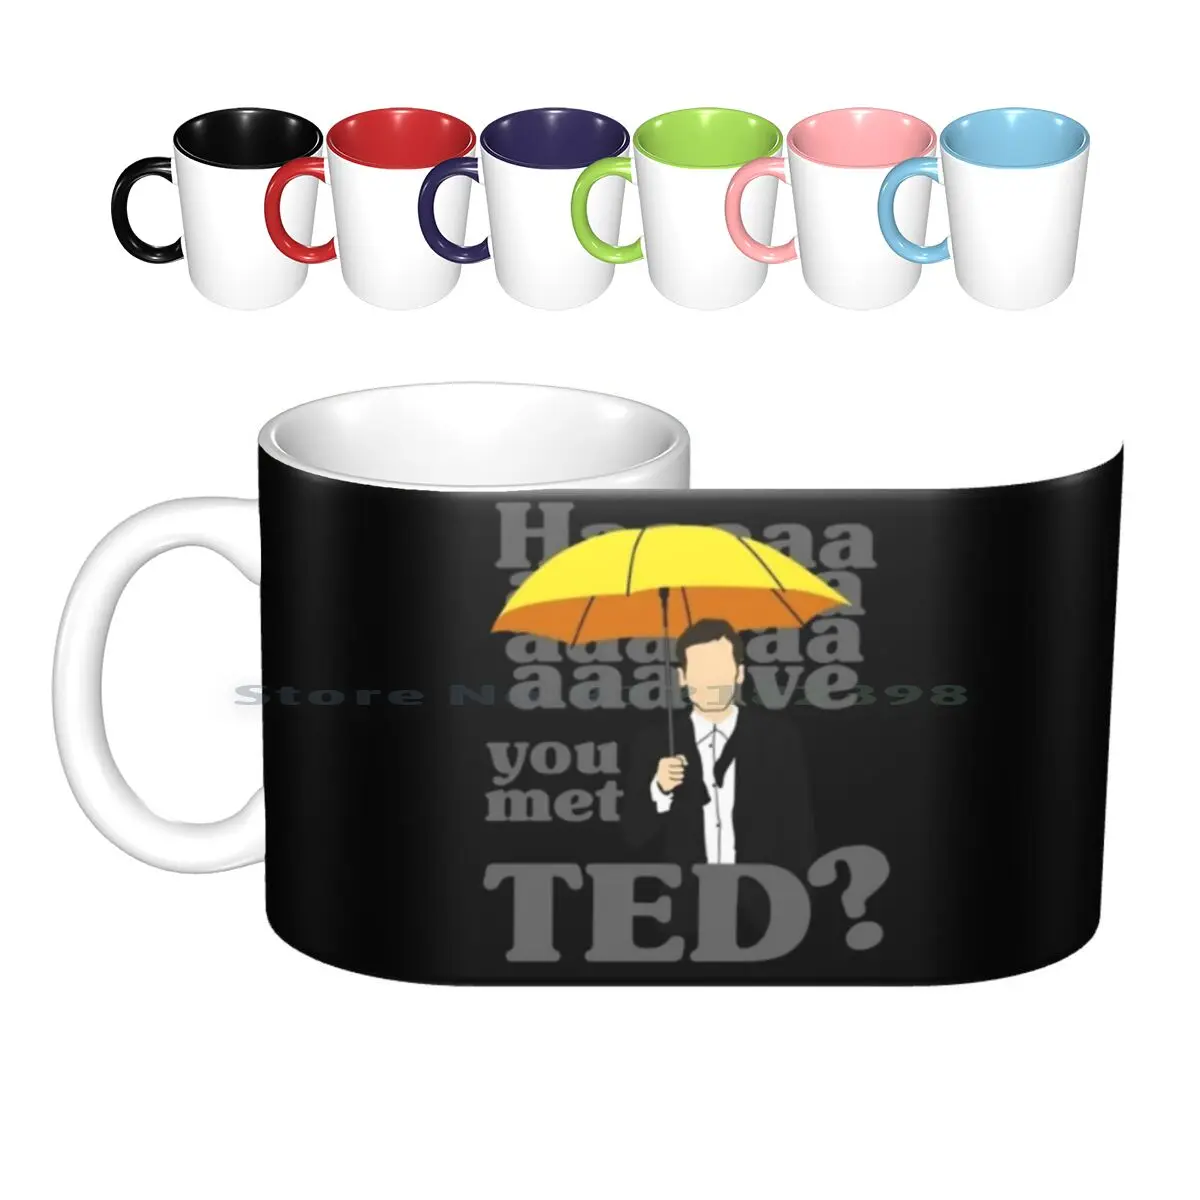 

Haaaave You Met Ted  Ceramic Mugs Coffee Cups Milk Tea Mug How I Met Your Mother Nerd Nerdy Geek Geeky Romantic New Season